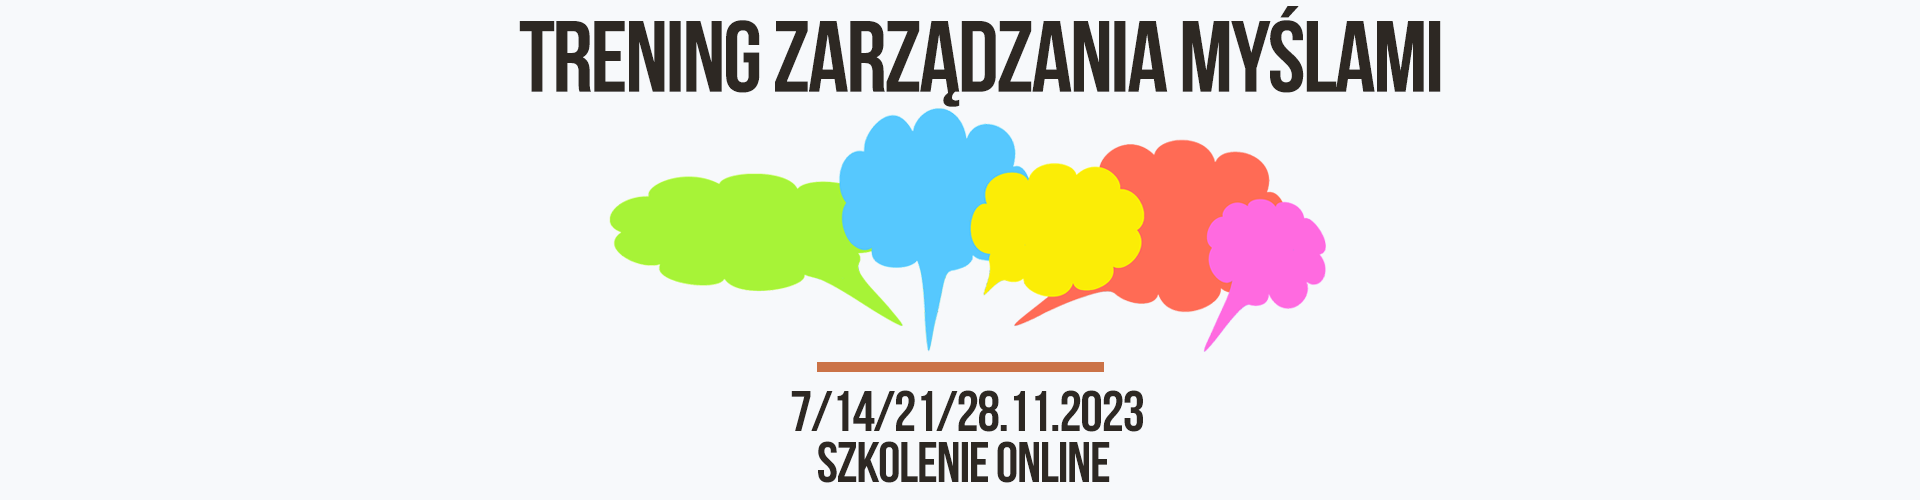 TRENING-ZARZADZANIA-MYSLAMI-3